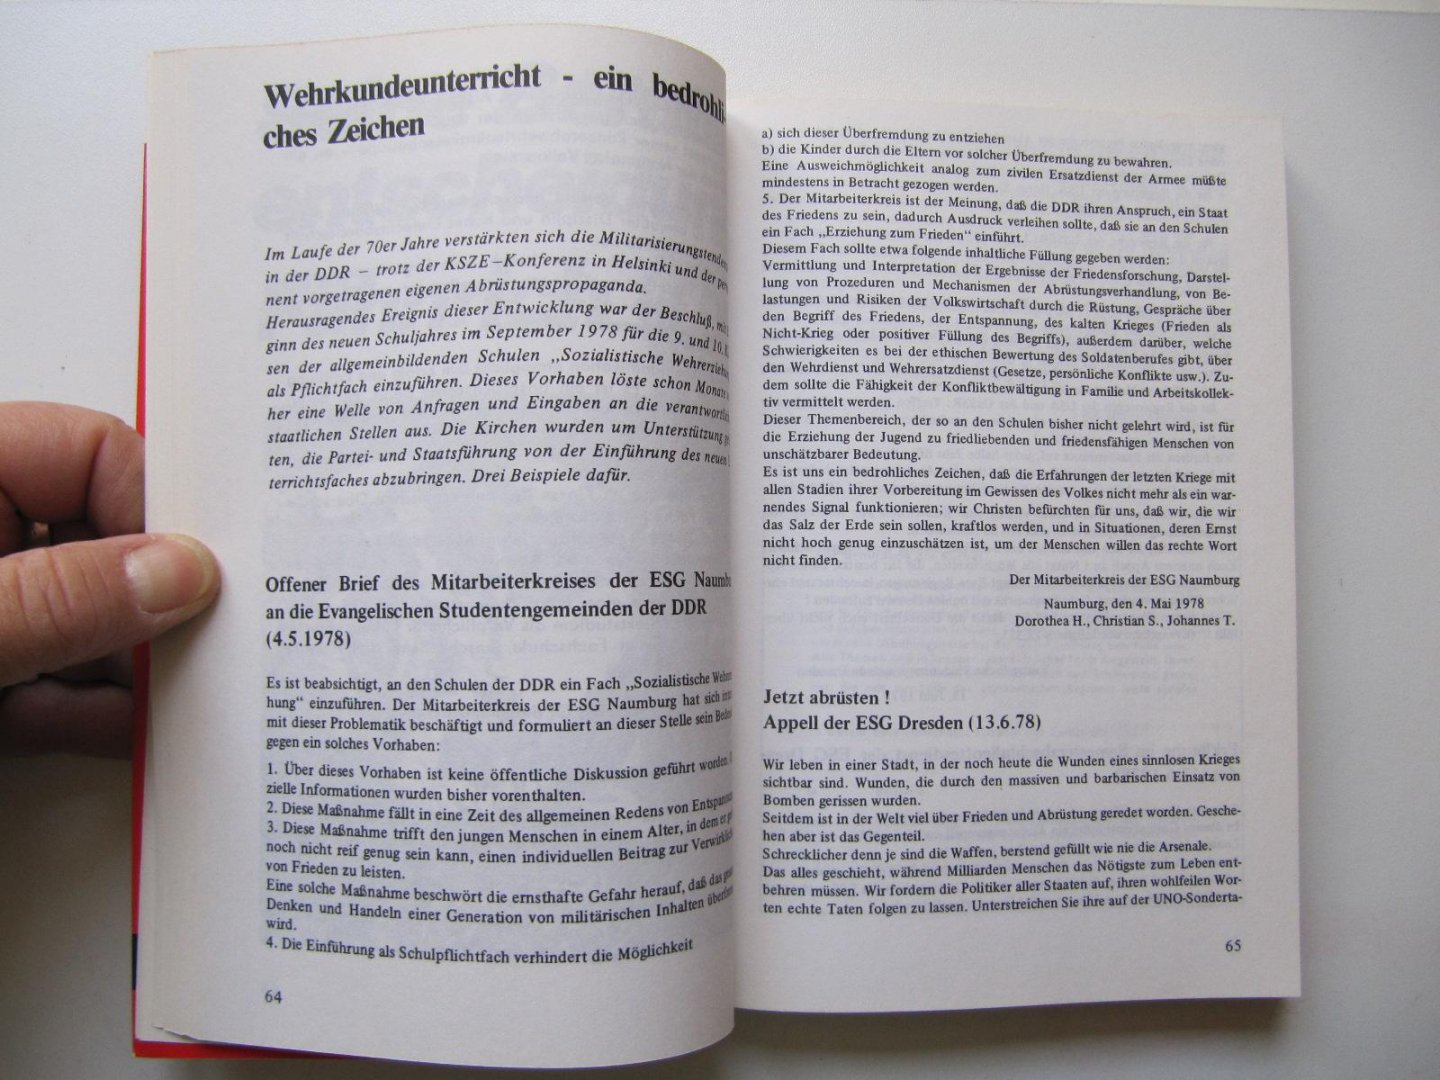 Peter Wensierski und Wolfgang Büscher - Friedensbewegung in der DDR